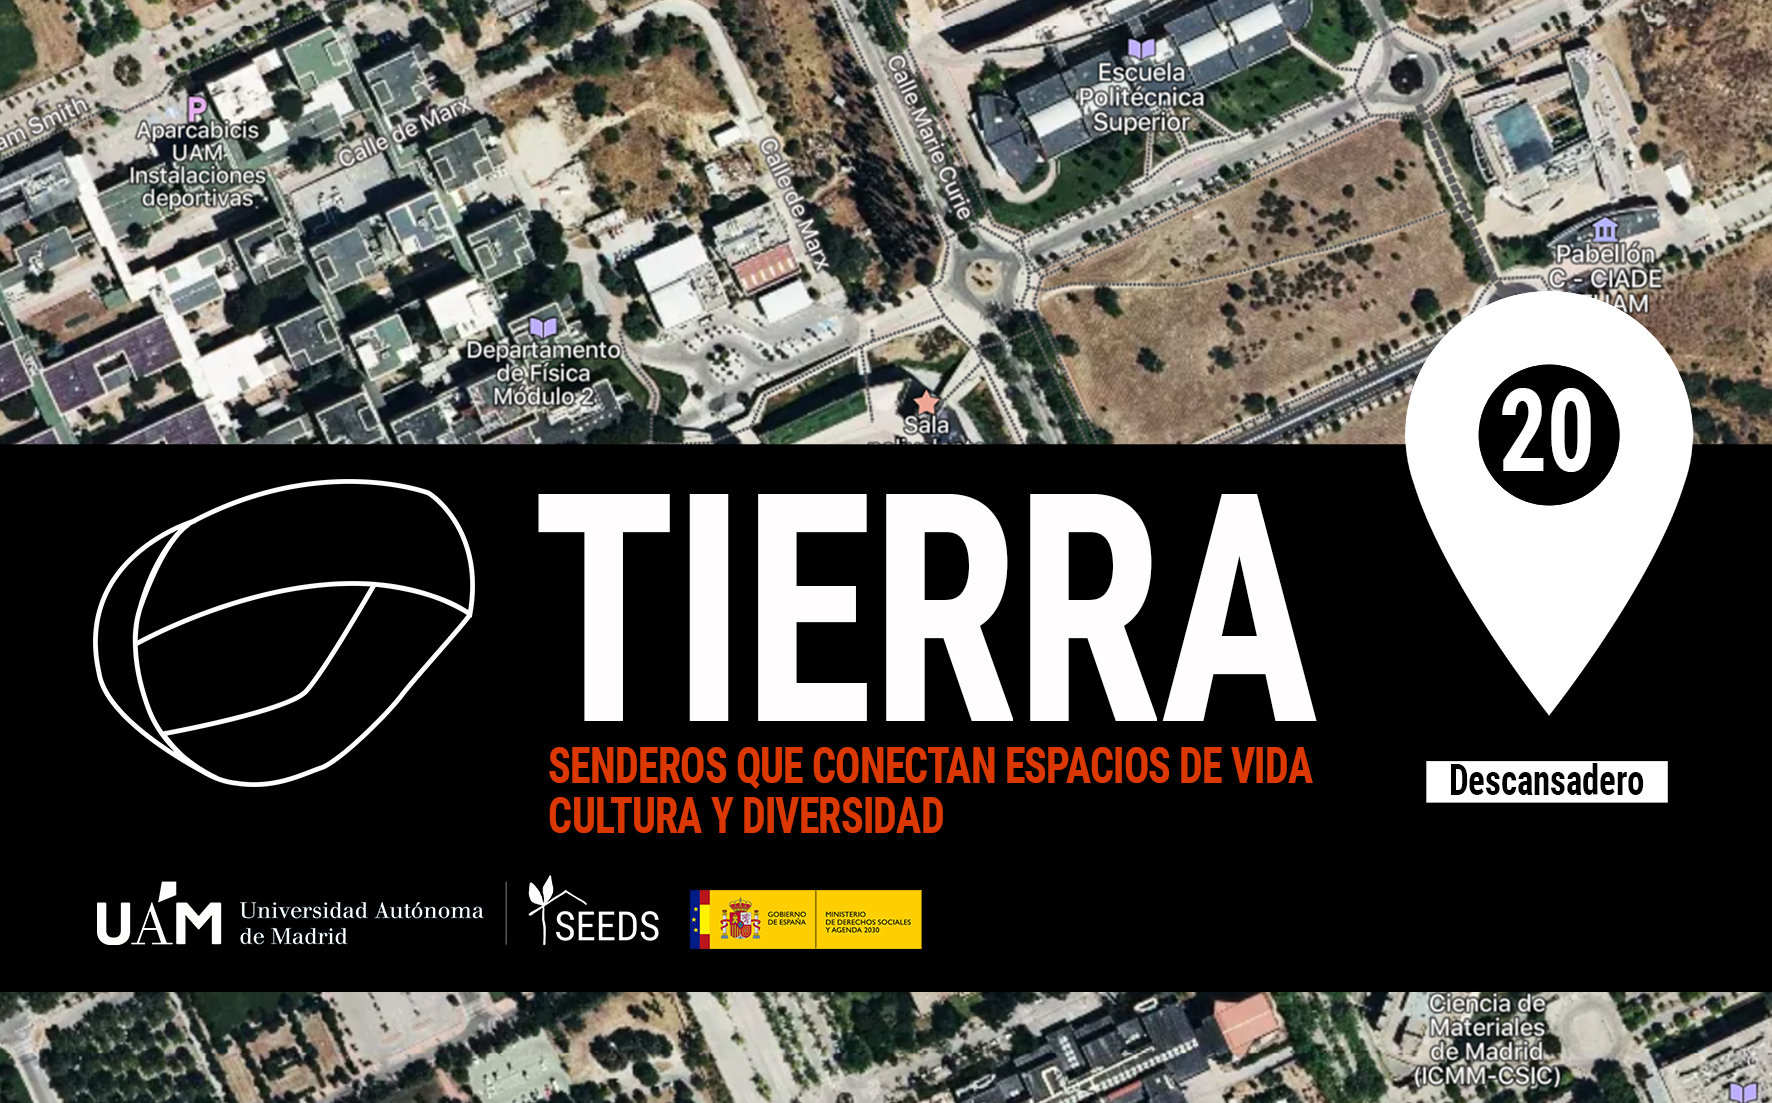 TIERRA: Descansadero 20_Senderos que conectan vida cultura diversidad